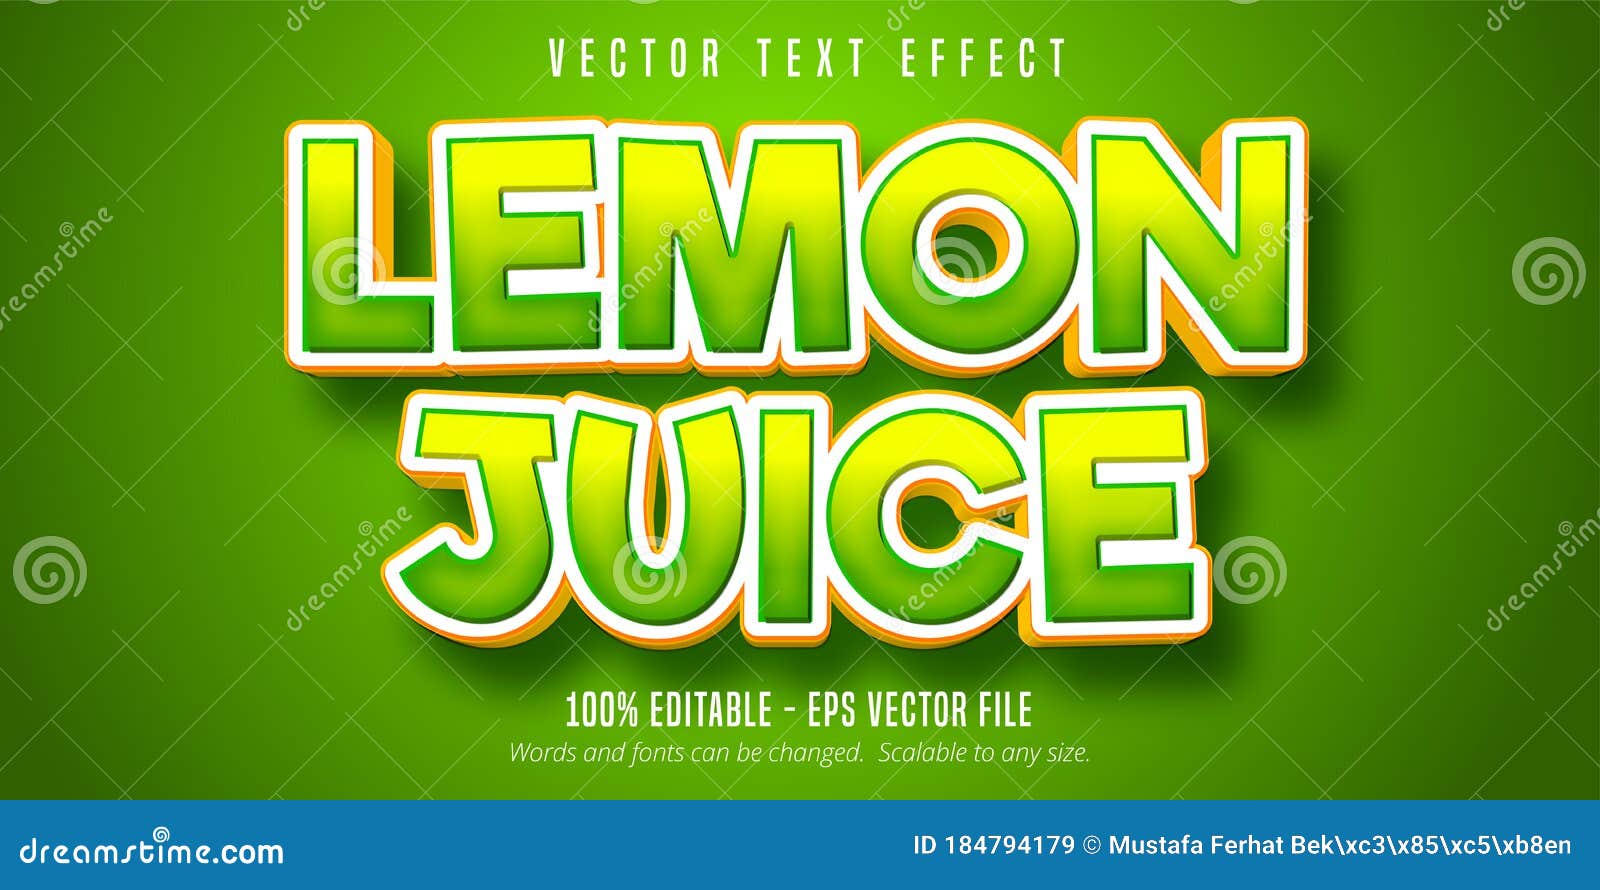 lemon juice text, green editable text effect